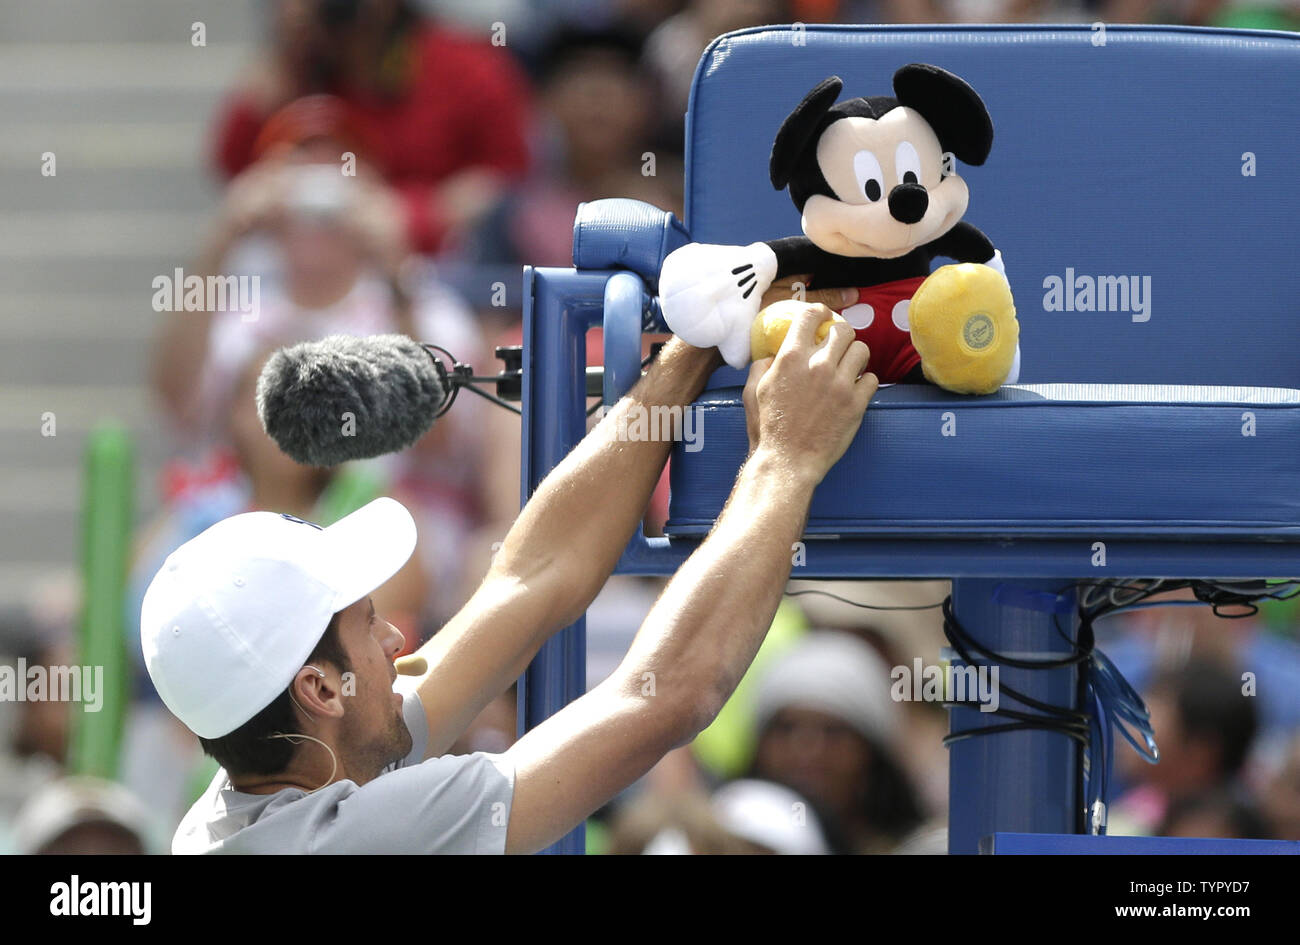 Nicolas Djokovic pone un peluche de Mickey Mouse en los árbitros bench en Arthur Ashe Kids día antes del US Open de tenis Campeonato en el USTA Billie Jean King National Tennis